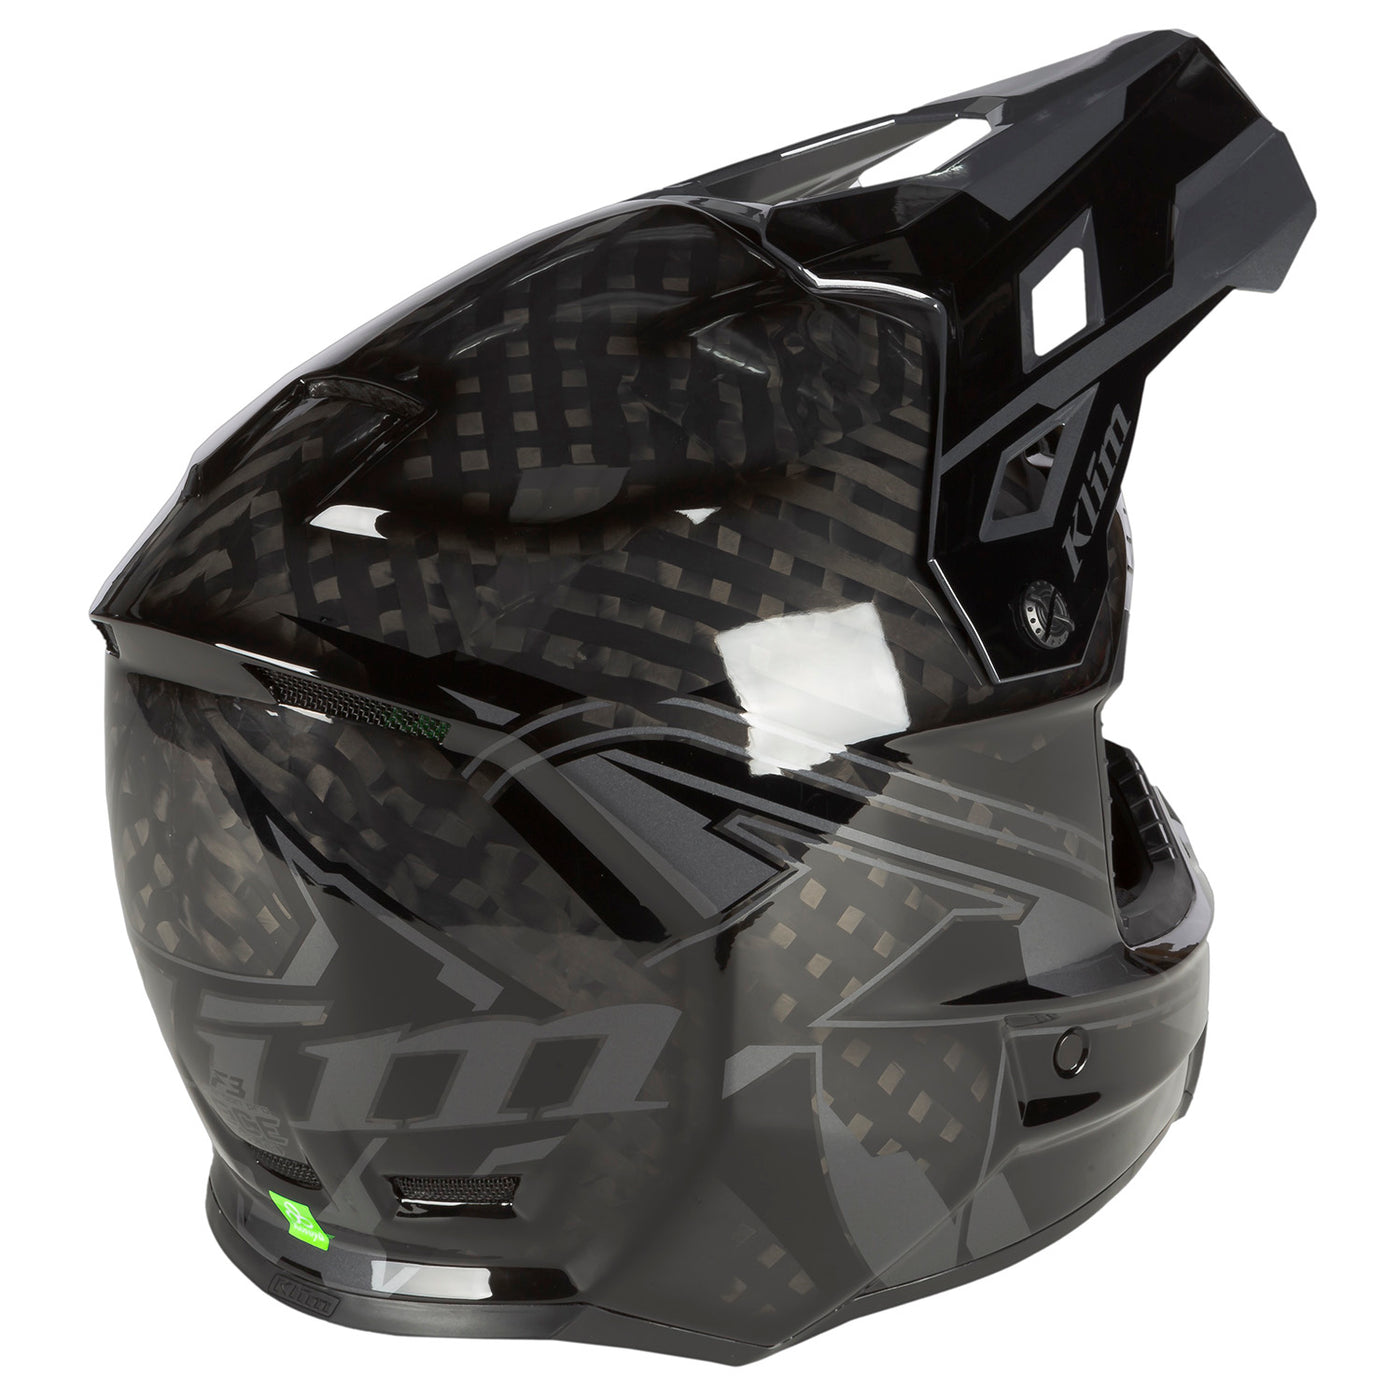 Klim, Klim F3 Carbon Pro Helmet ECE, Snow Helmets, Snowmobile Helmets, Men's Helmet, Snow Gear, 3794-000